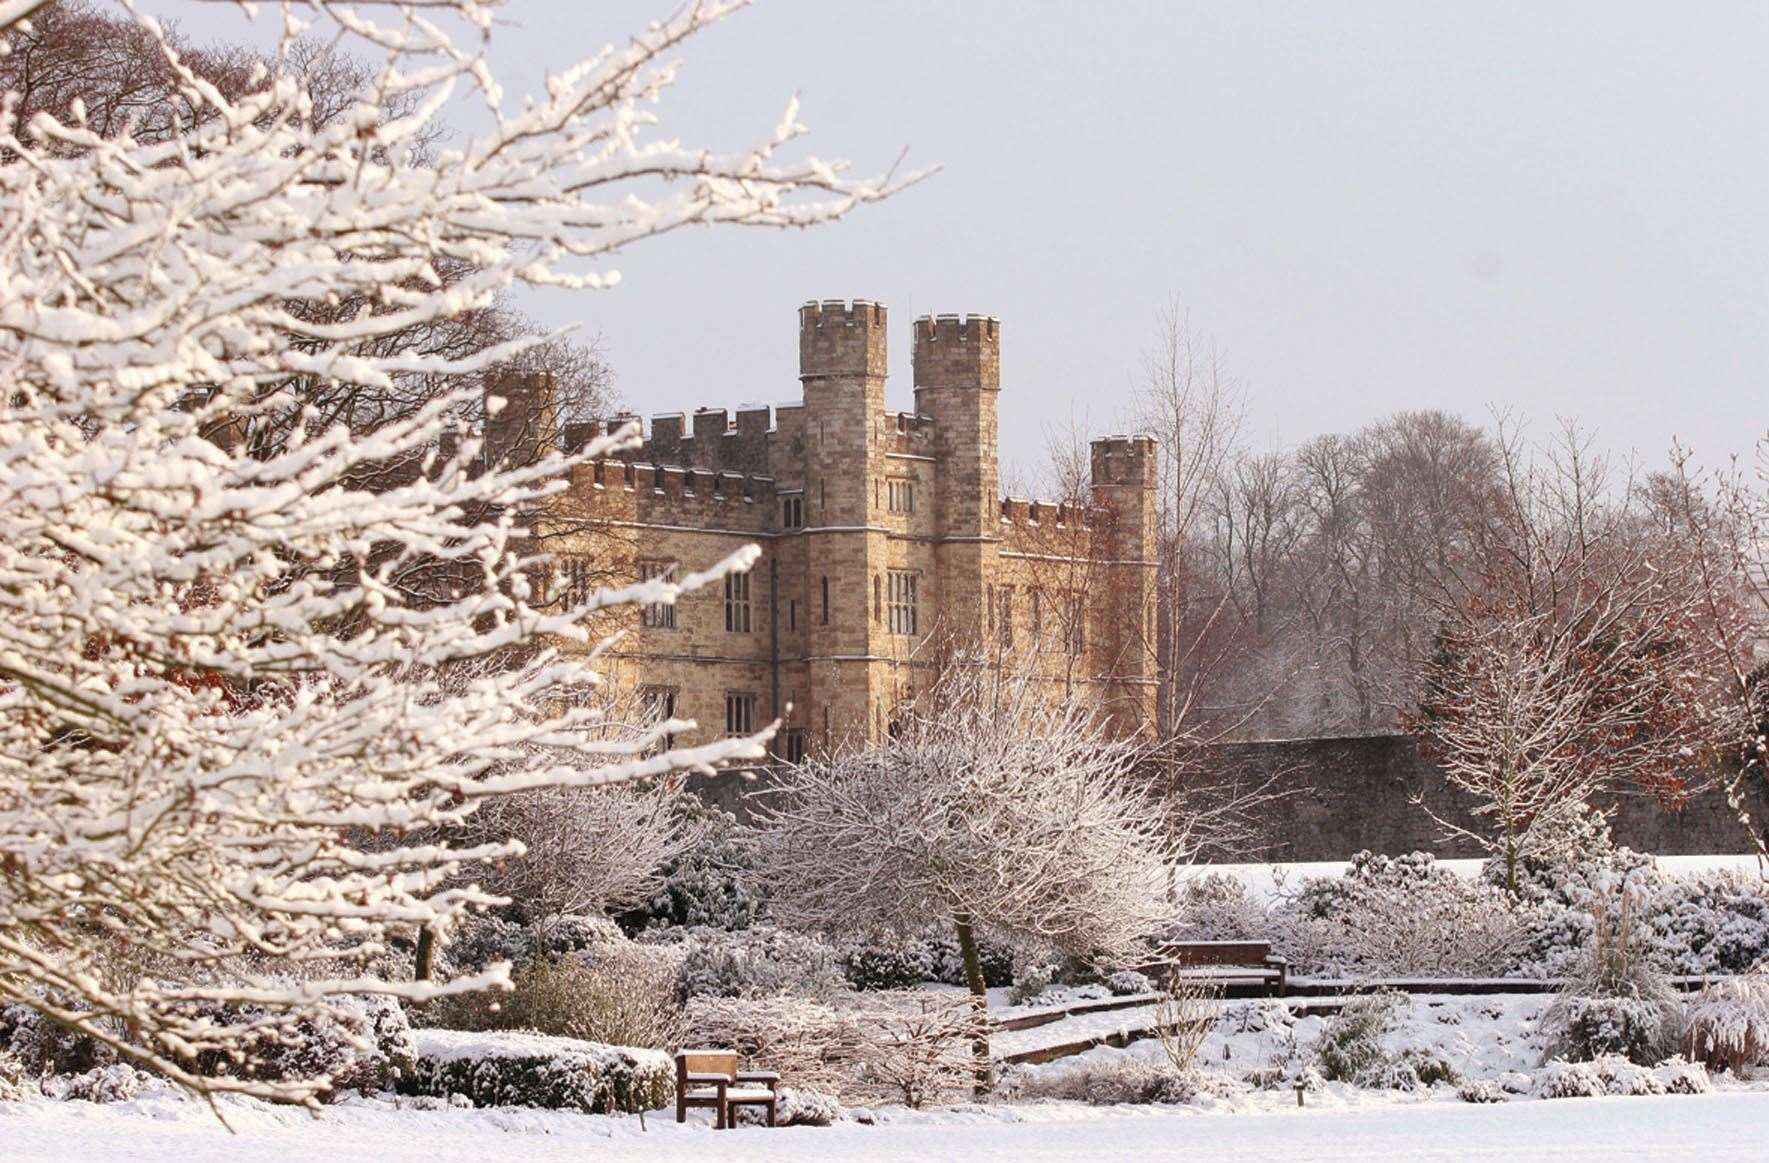 Leeds Castle in the winter